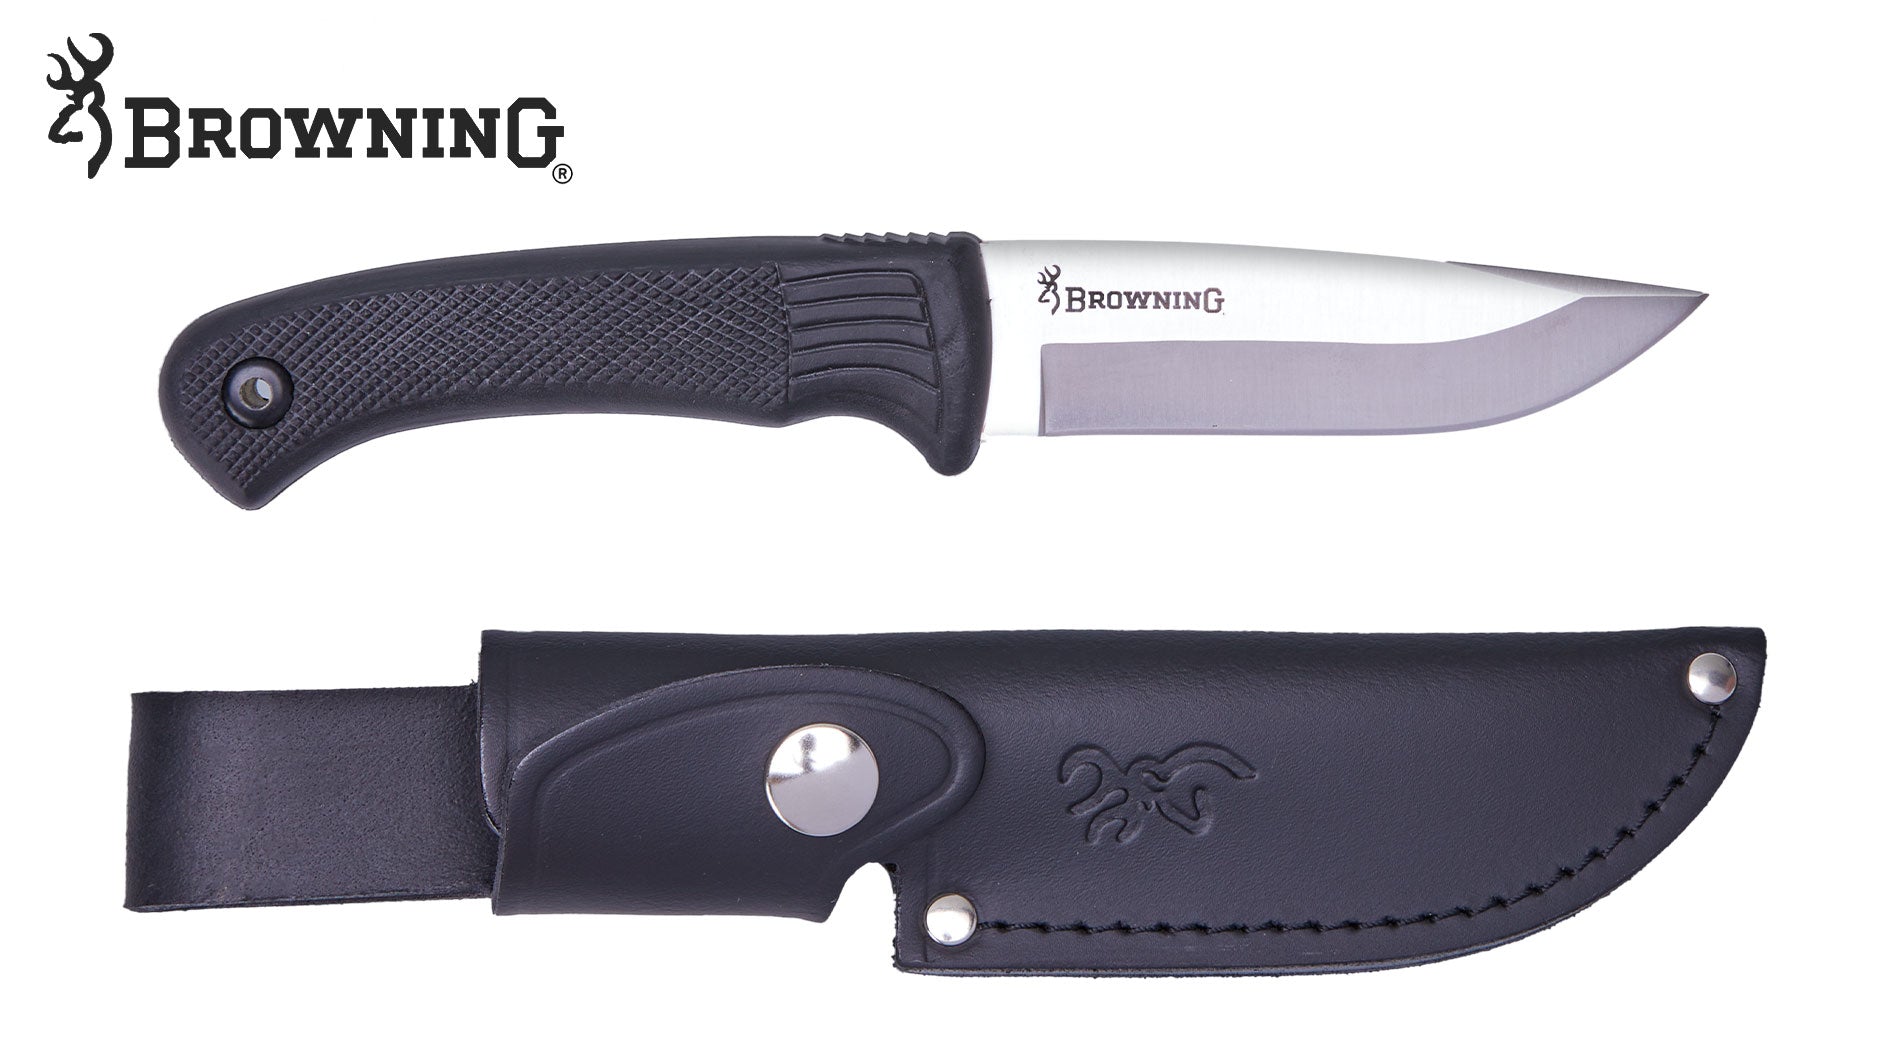 Es handelt sich hier um BROWNING Messer Pro Hunter Black für die Jagd.